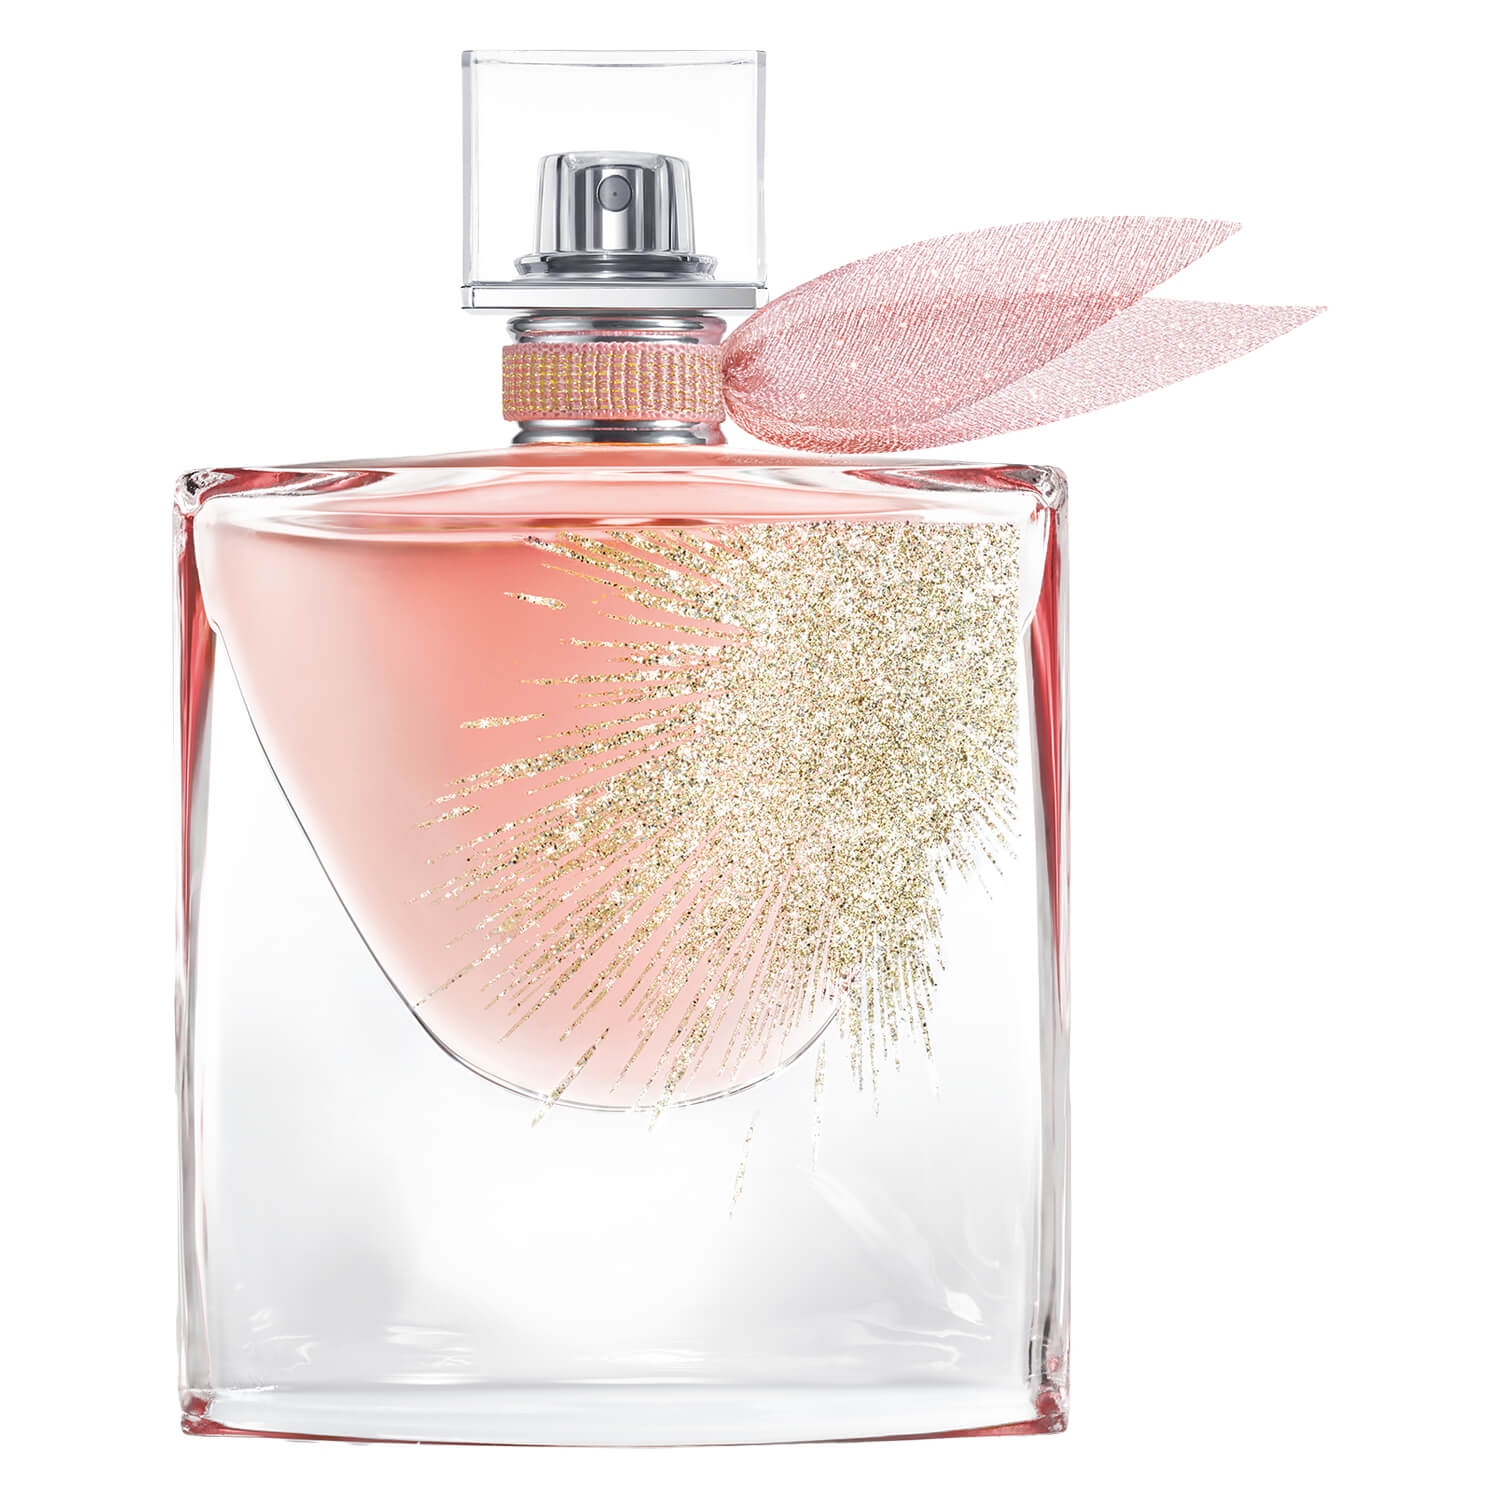 Product image from La Vie est Belle - Oui Eau de Parfum